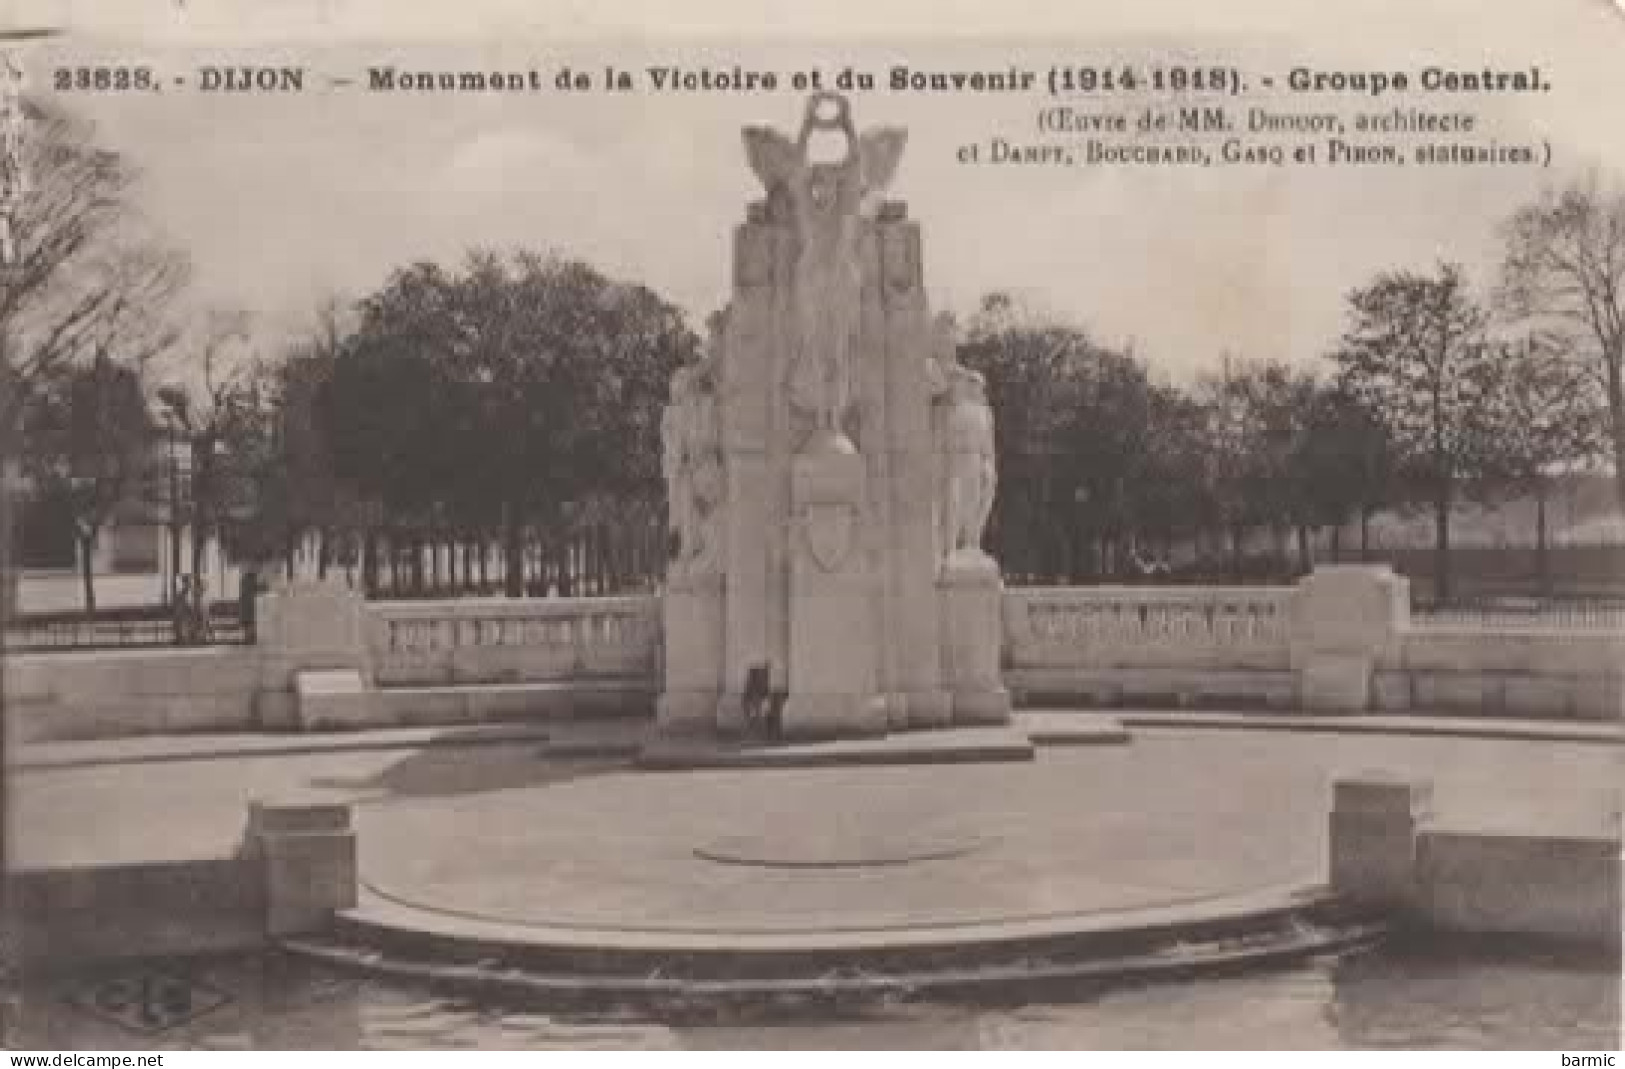 DIJON, MONUMENT DE LA VICTOIRE ET DU SOUVENIR 1914-1918 GROUPE CENTRAL LA FONTAINE ST GOND REF 16383 - Kriegerdenkmal